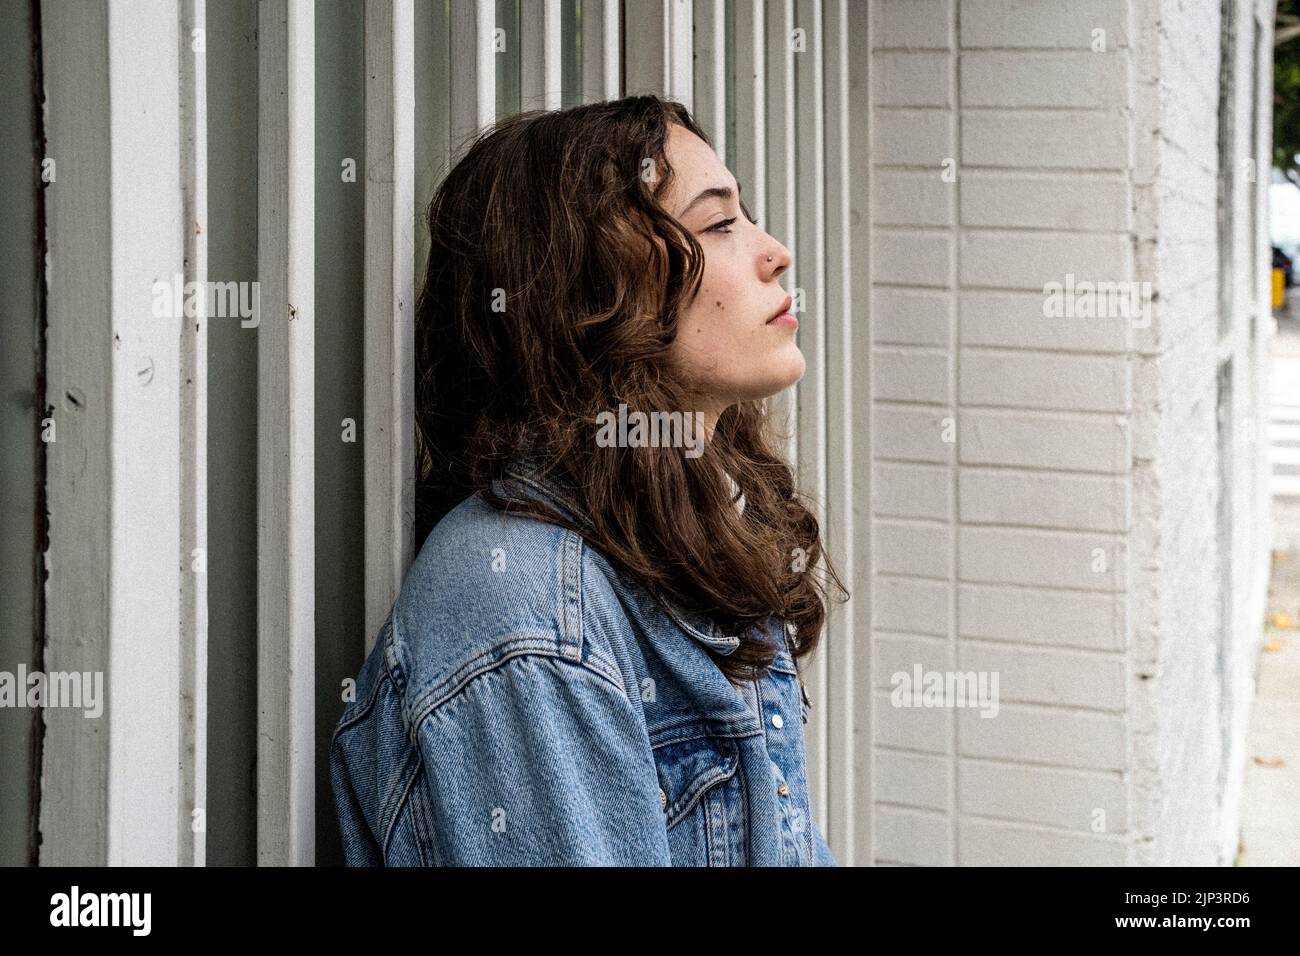 Unbeposed Portrait of Young Woman Waiting at Iron Security Door | Doorway | Downtown Sidewalk Stockfoto